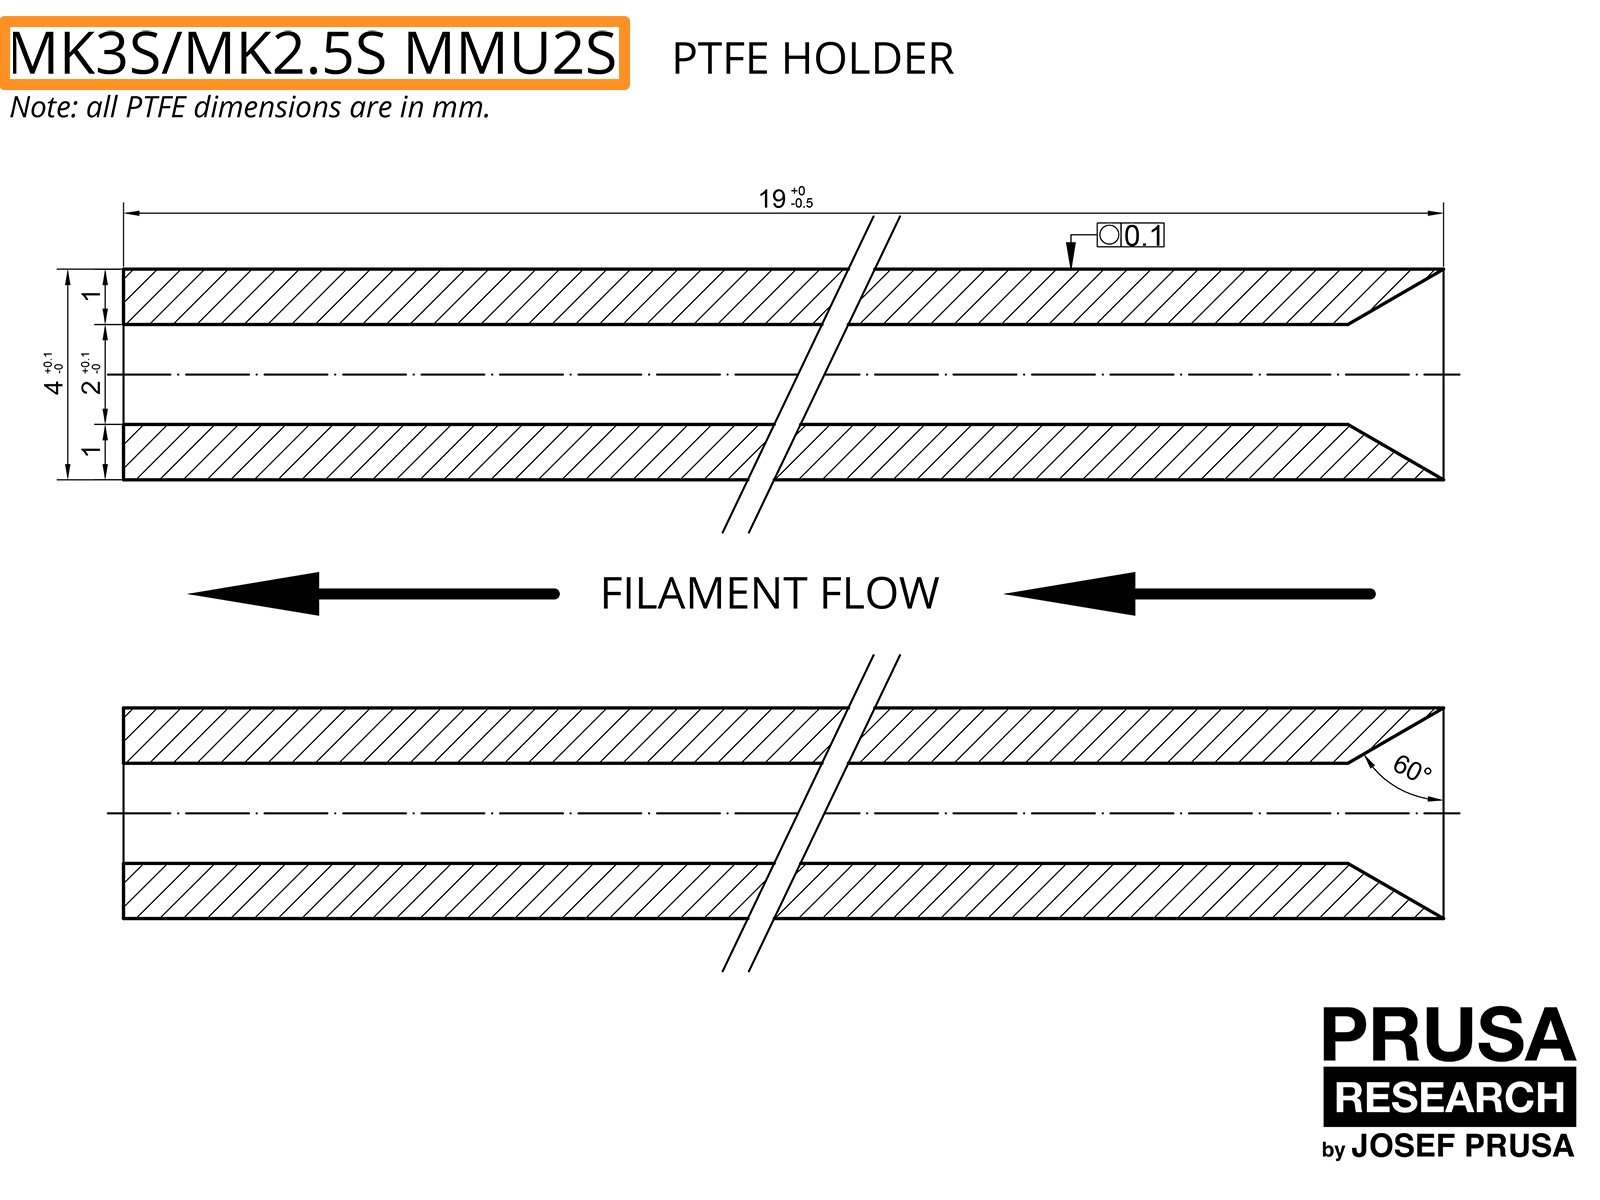 VERALTET: PTFE für den MK3S/MK2.5S MMU2S (Teil 1)